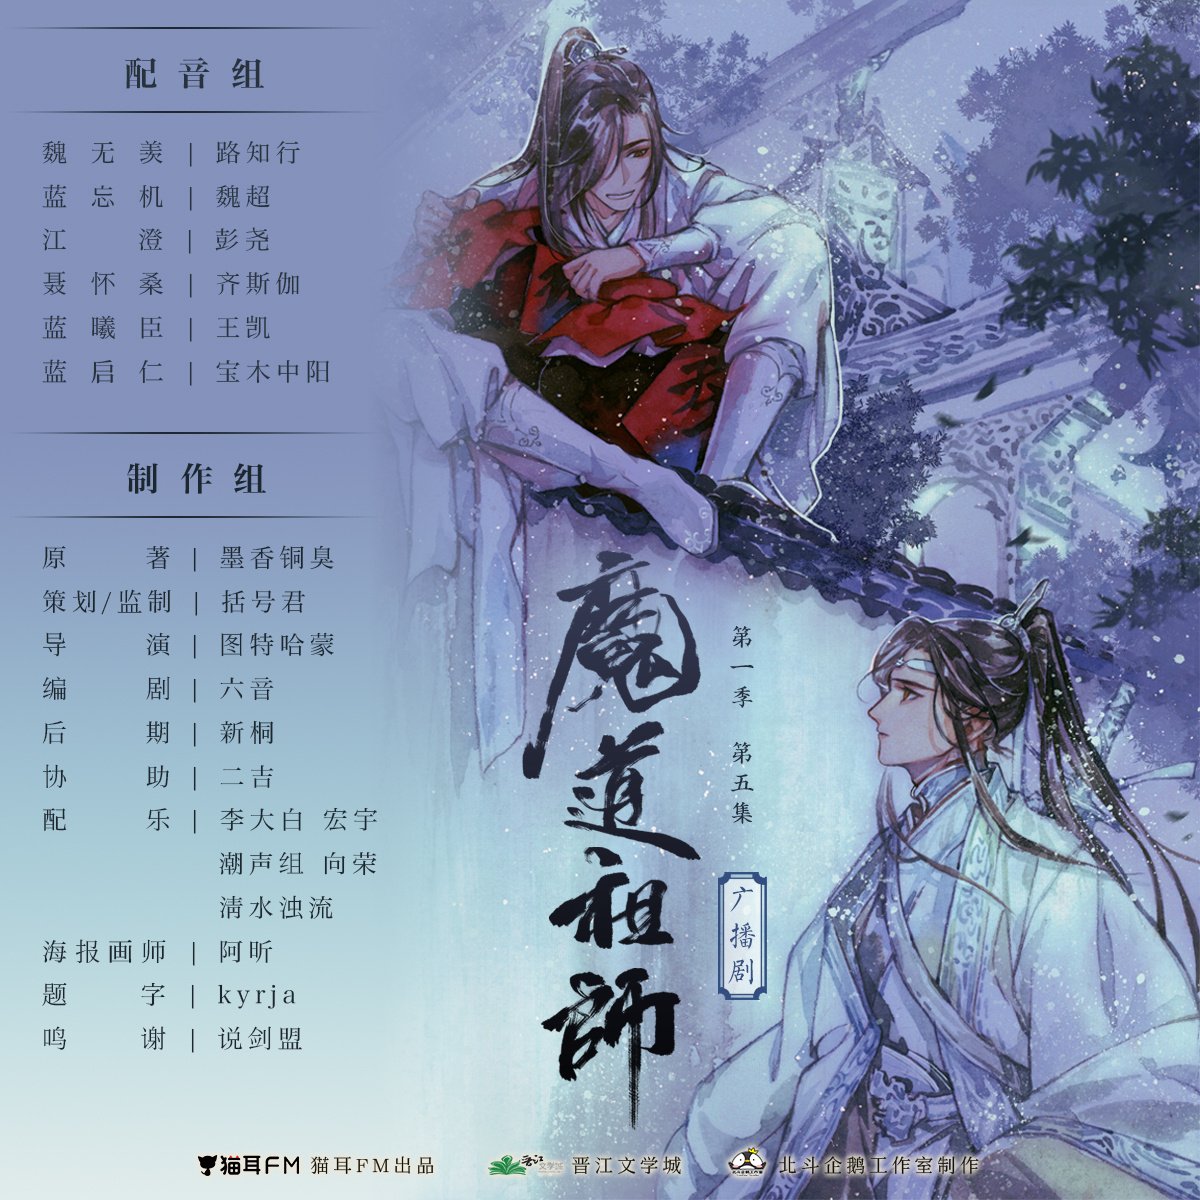 wangxian for mdzs audio drama S1 
cover art by: A-XIN 

#魔道祖师 #MDZS #忘羡 #WangXian #mdzsaudiodrama #officialart